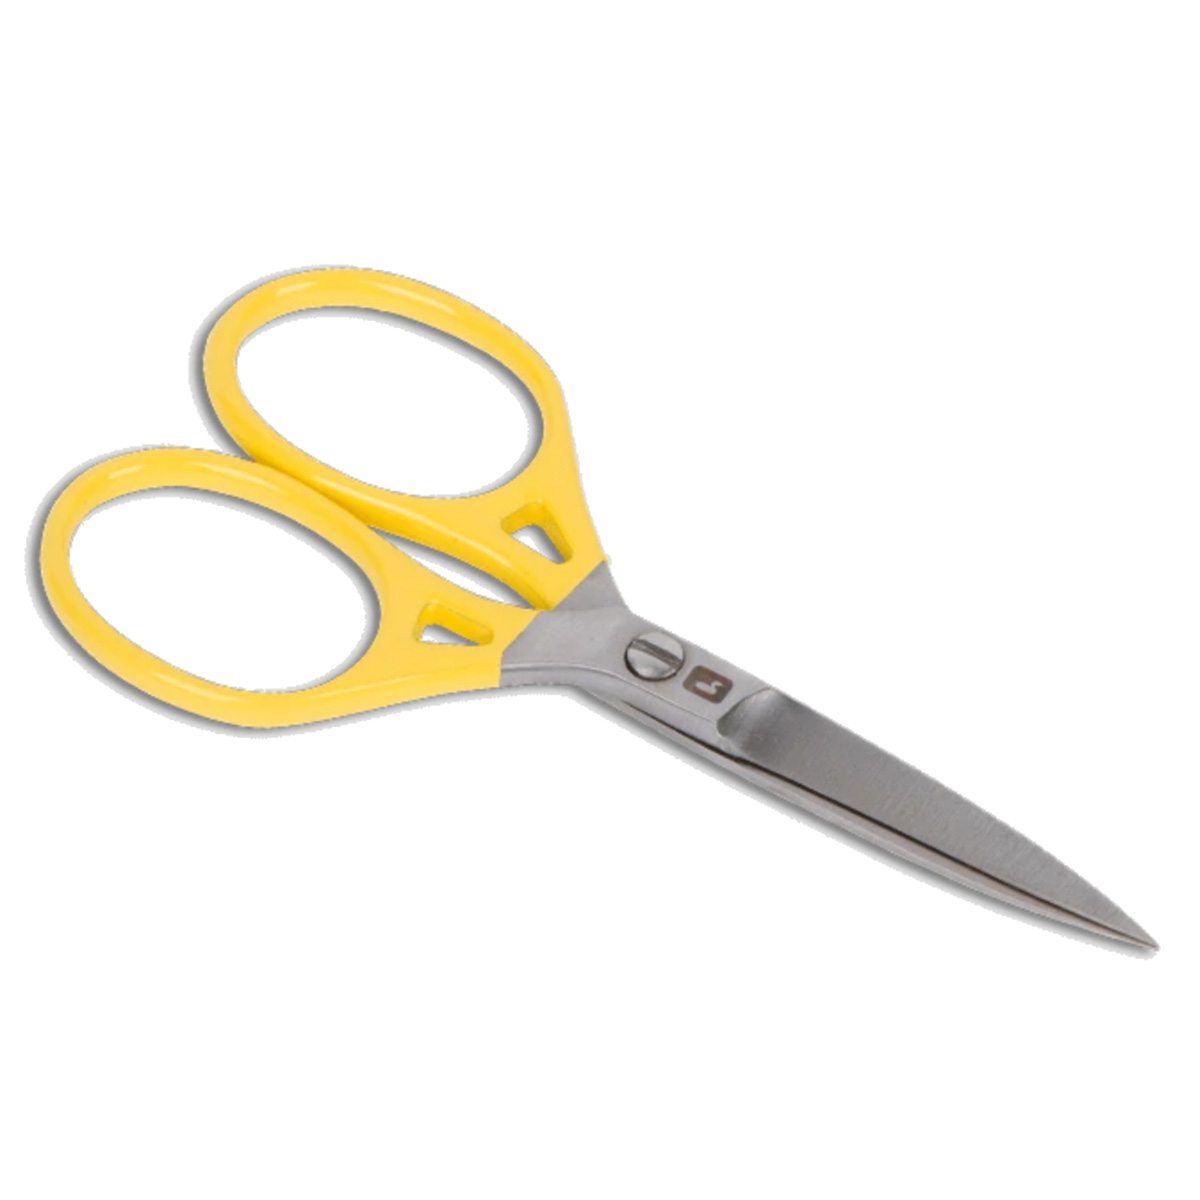 Loon Ergo 5 inch Prime Scissors